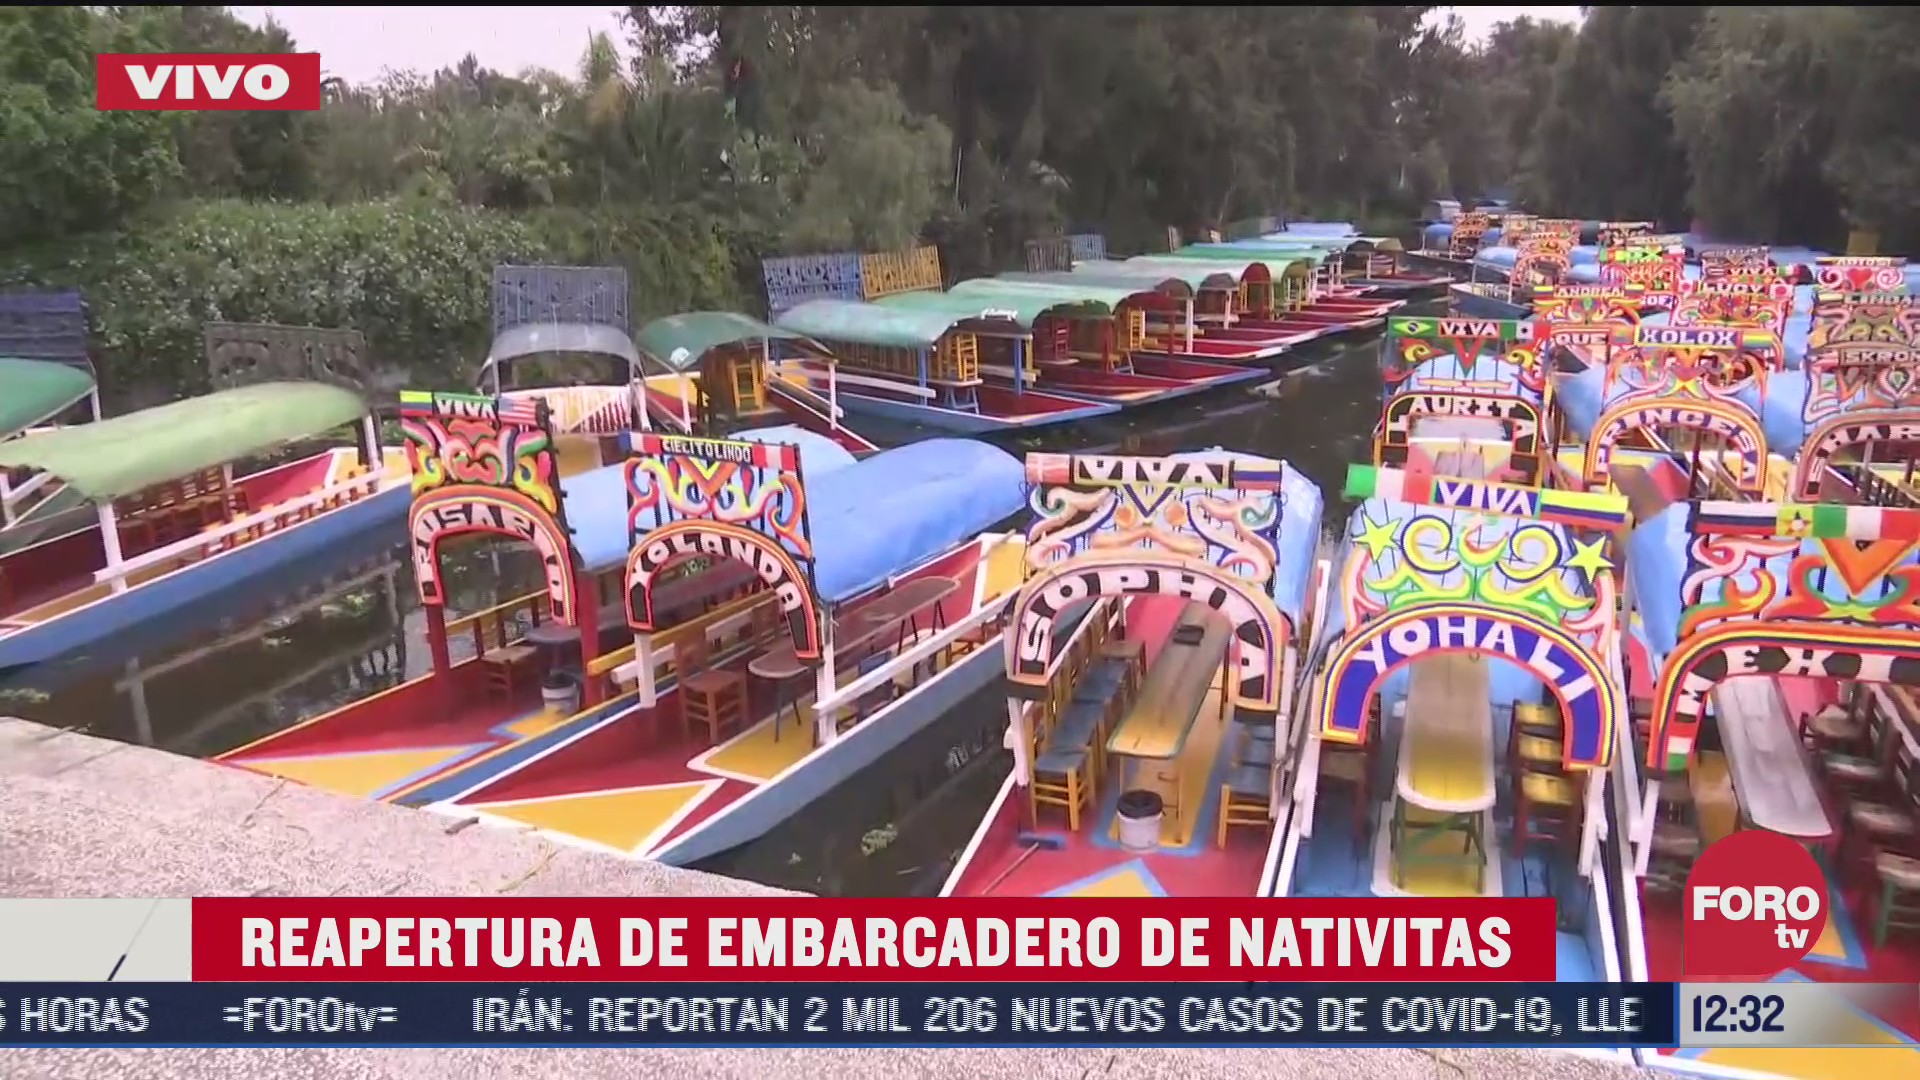 xochimilco celebra con mariachi reapertura de embarcadero